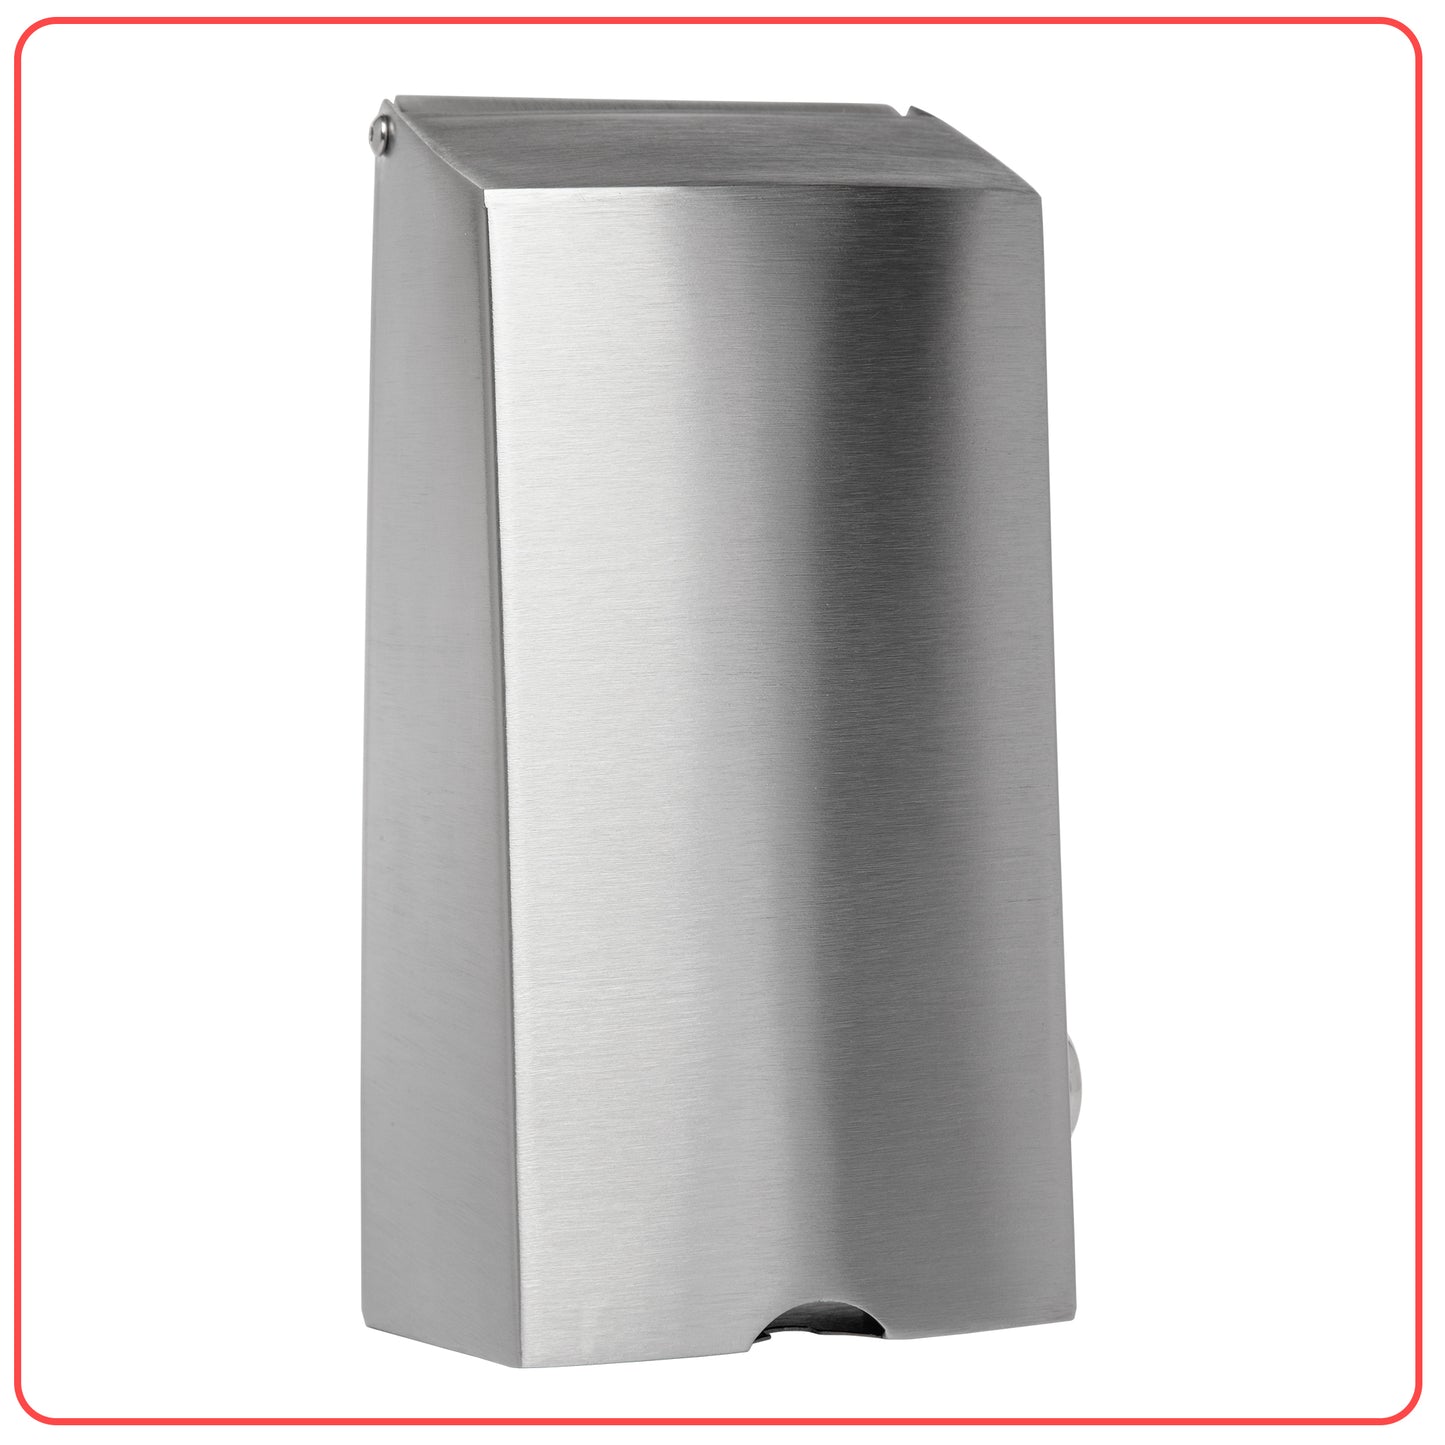 800ml Stainless Steel Manual Soap Dispenser